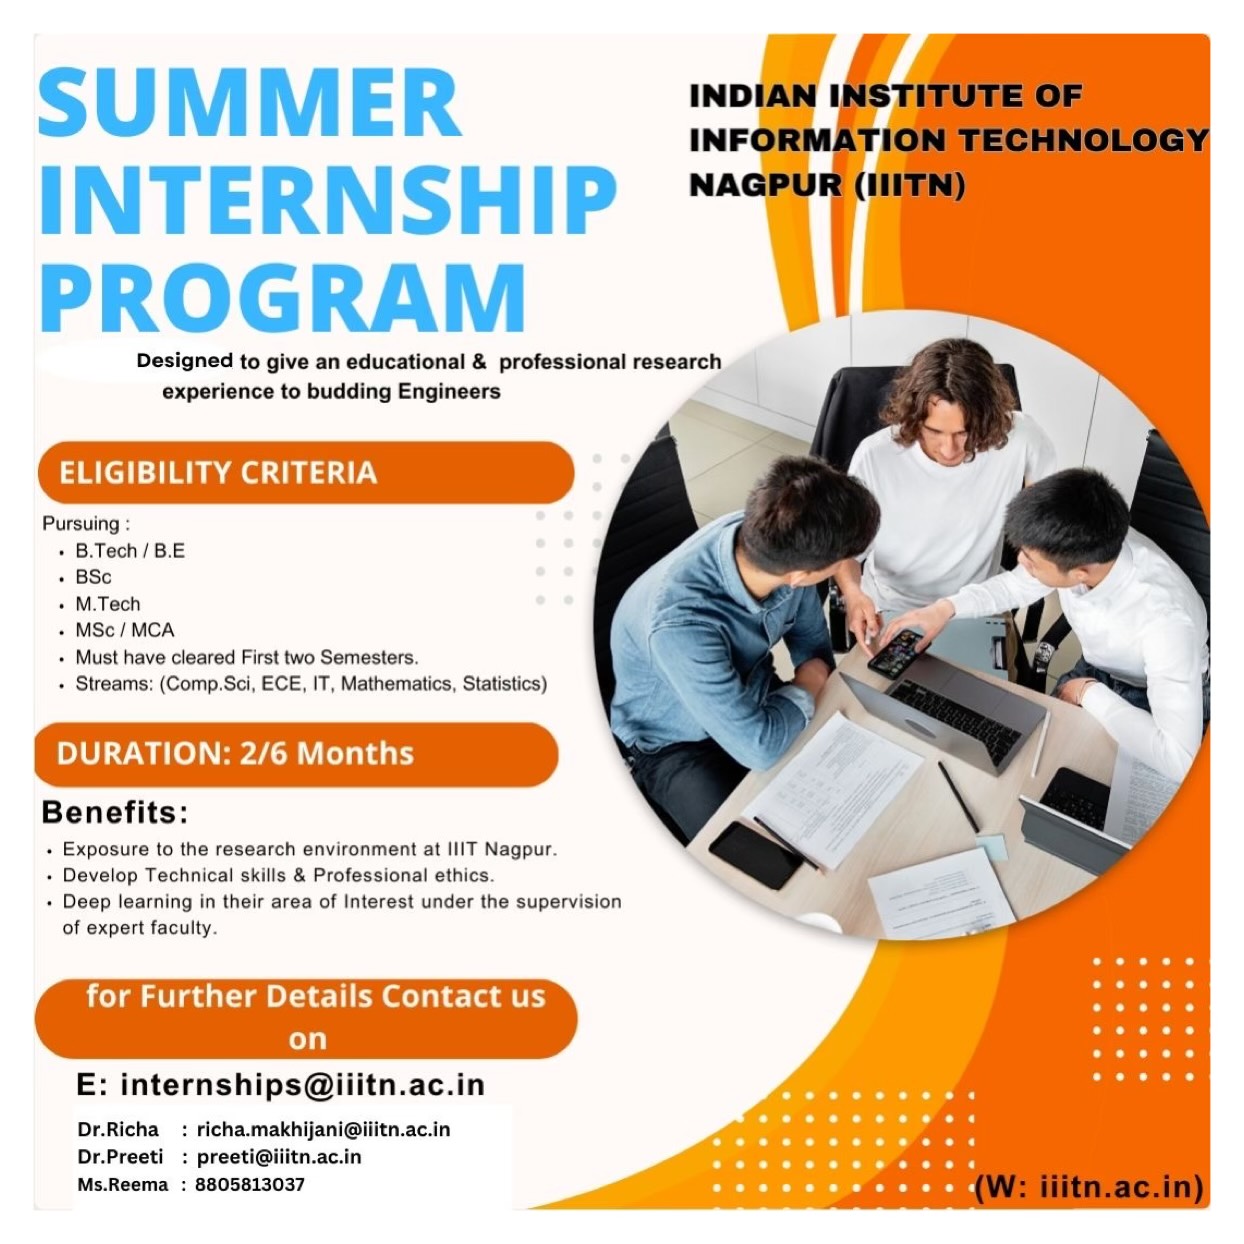 Summer Internship Program at IIITN